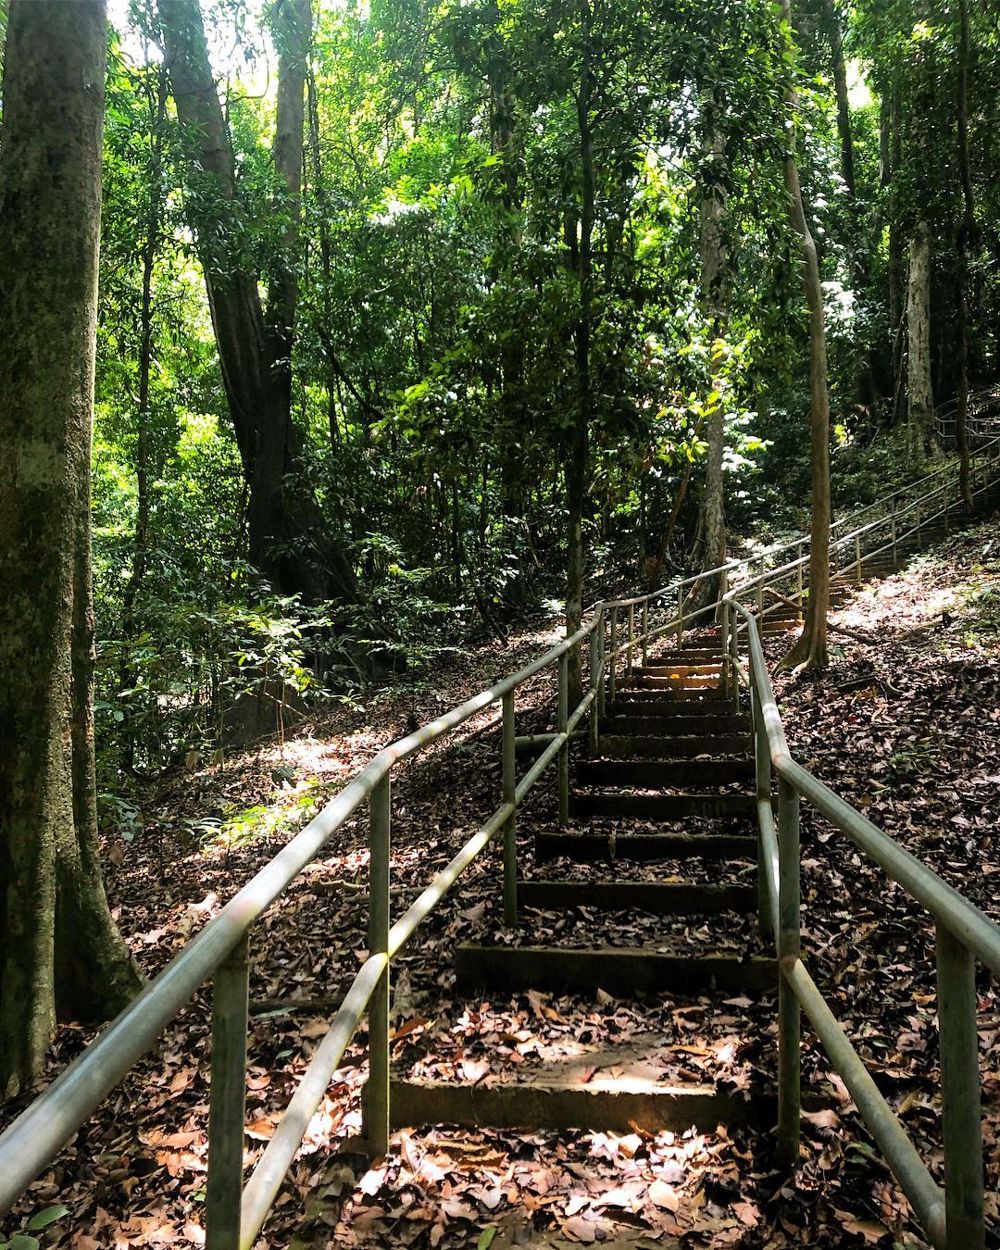 Staircase hiking trail at Mount Raya, Langkawi